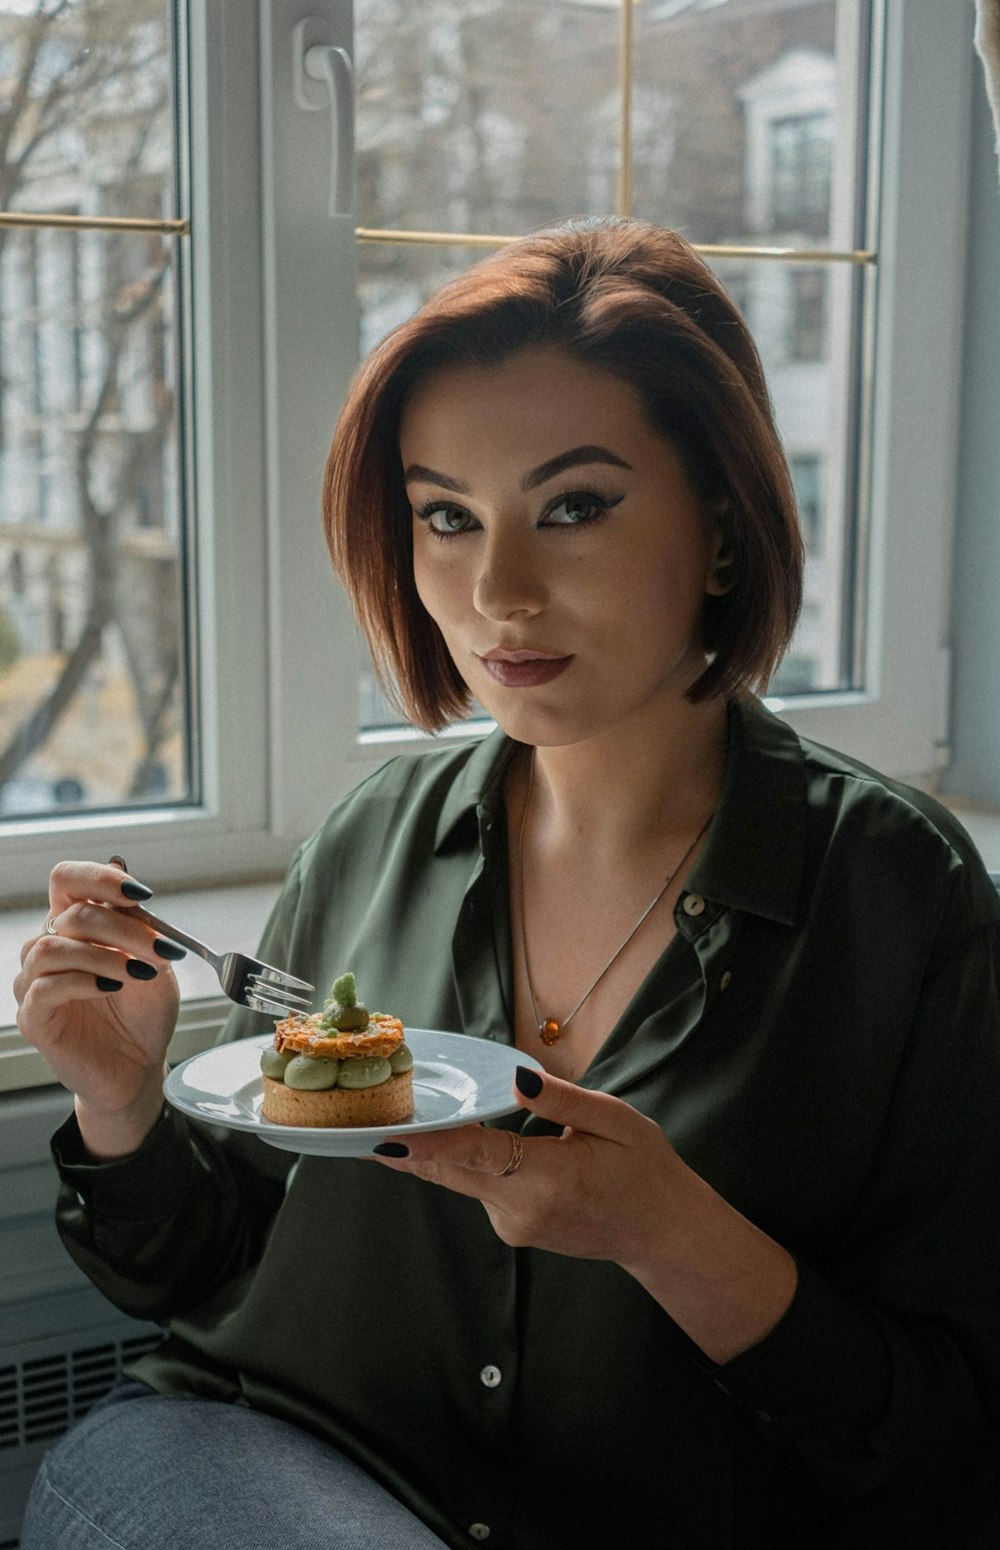 Eine Frau, die einen Teller mit Essen vor ein Fenster hält